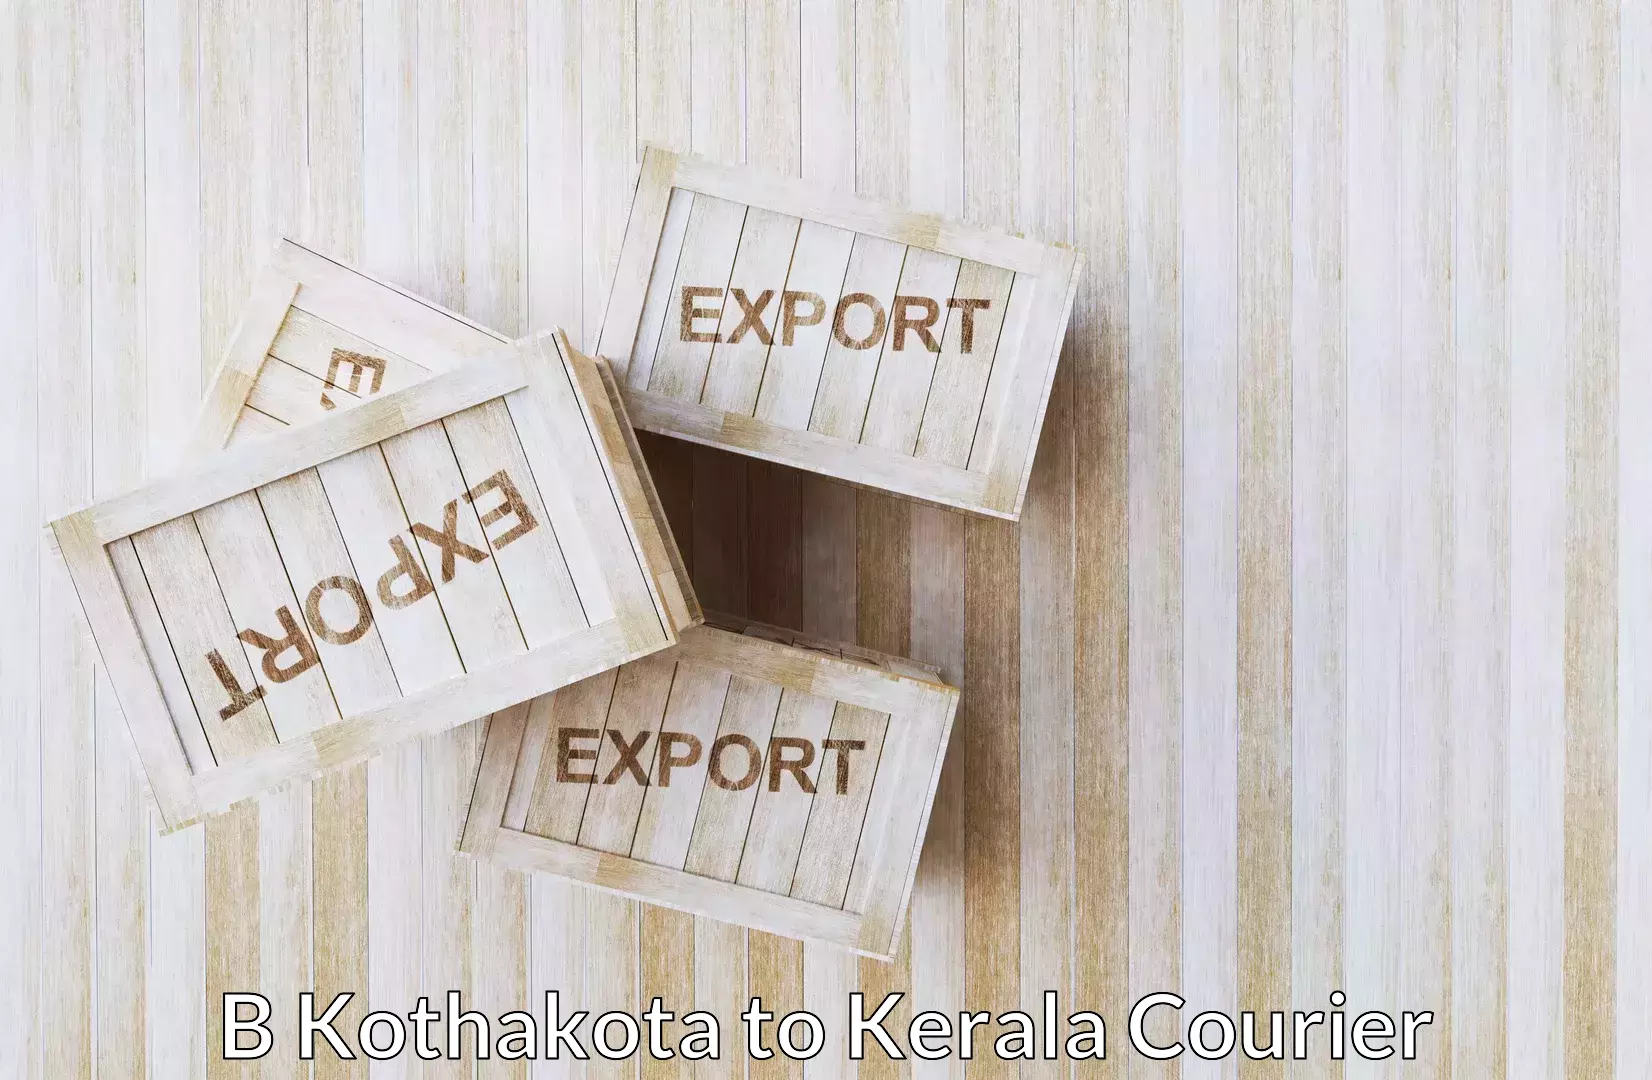 Efficient furniture transport B Kothakota to Akaloor